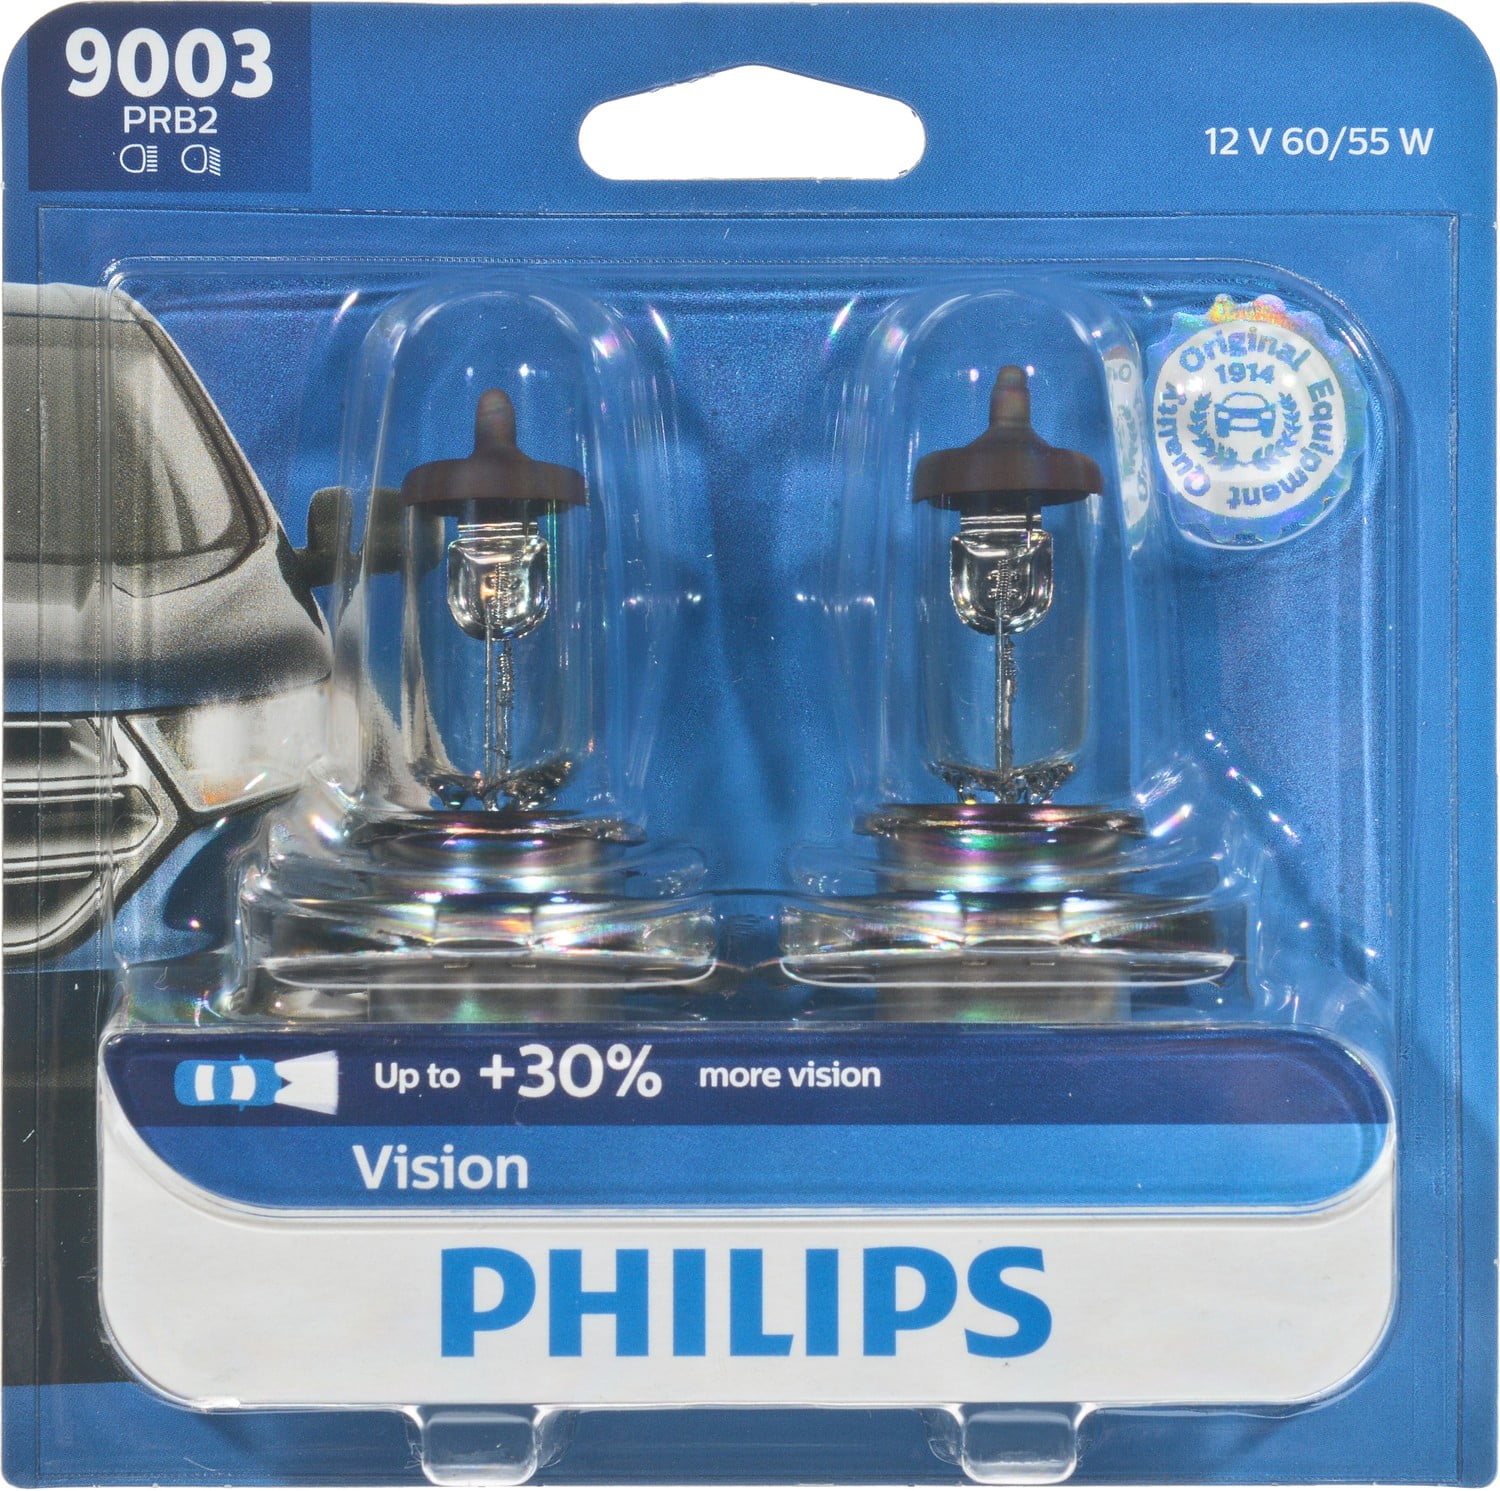 Philips H4 9003 12v 60/55w P43t Original Quality Car Headlight